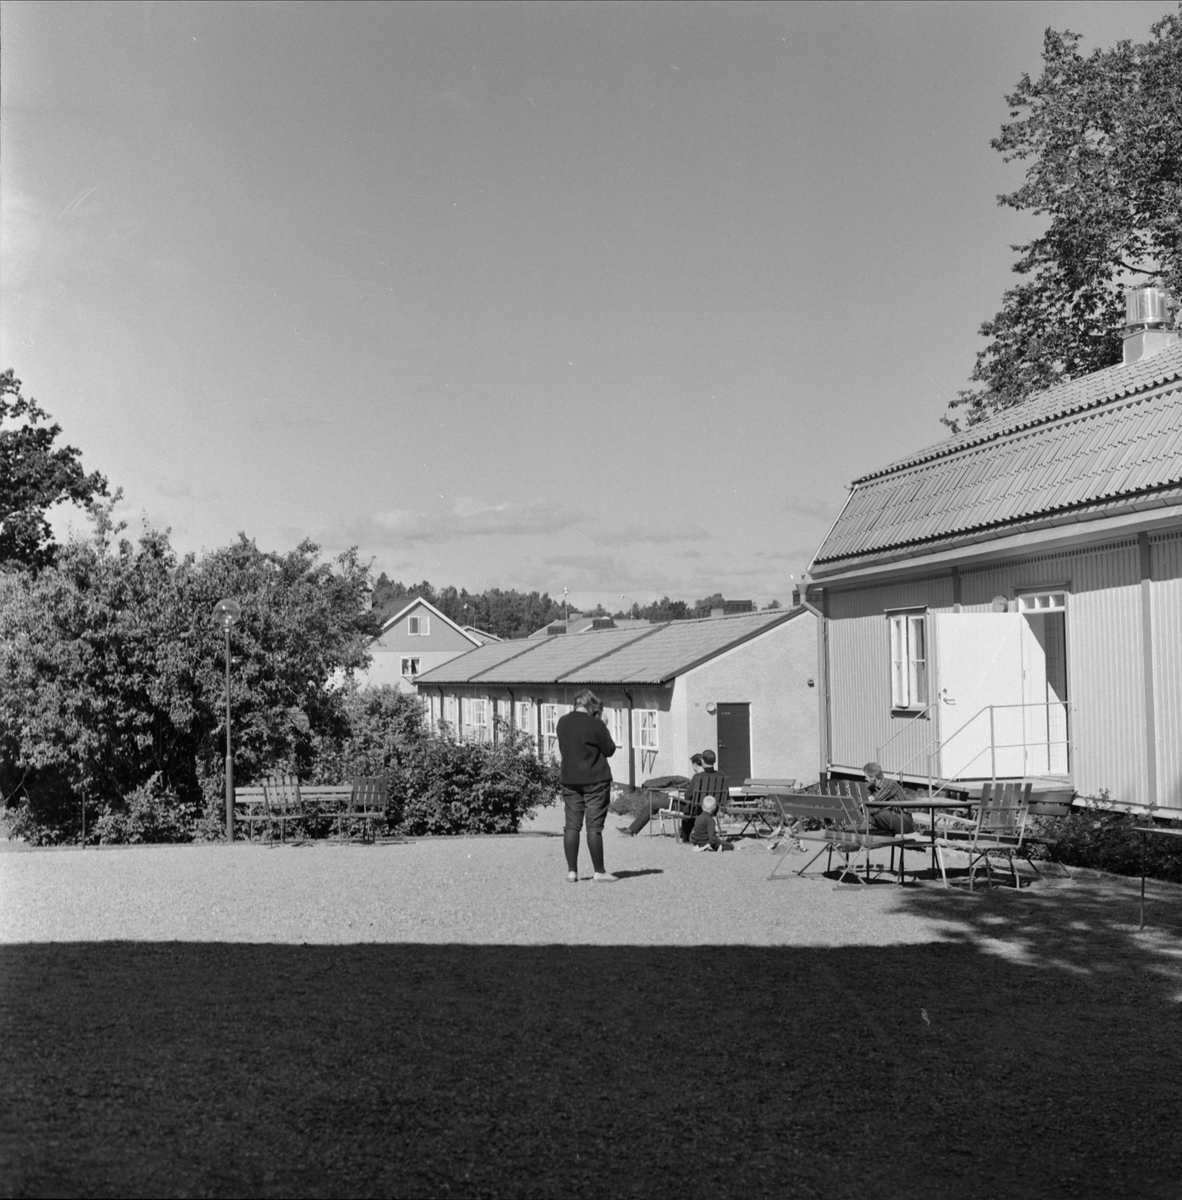 Ulleråkers mentalsjukhus, Kronåsen, Uppsala